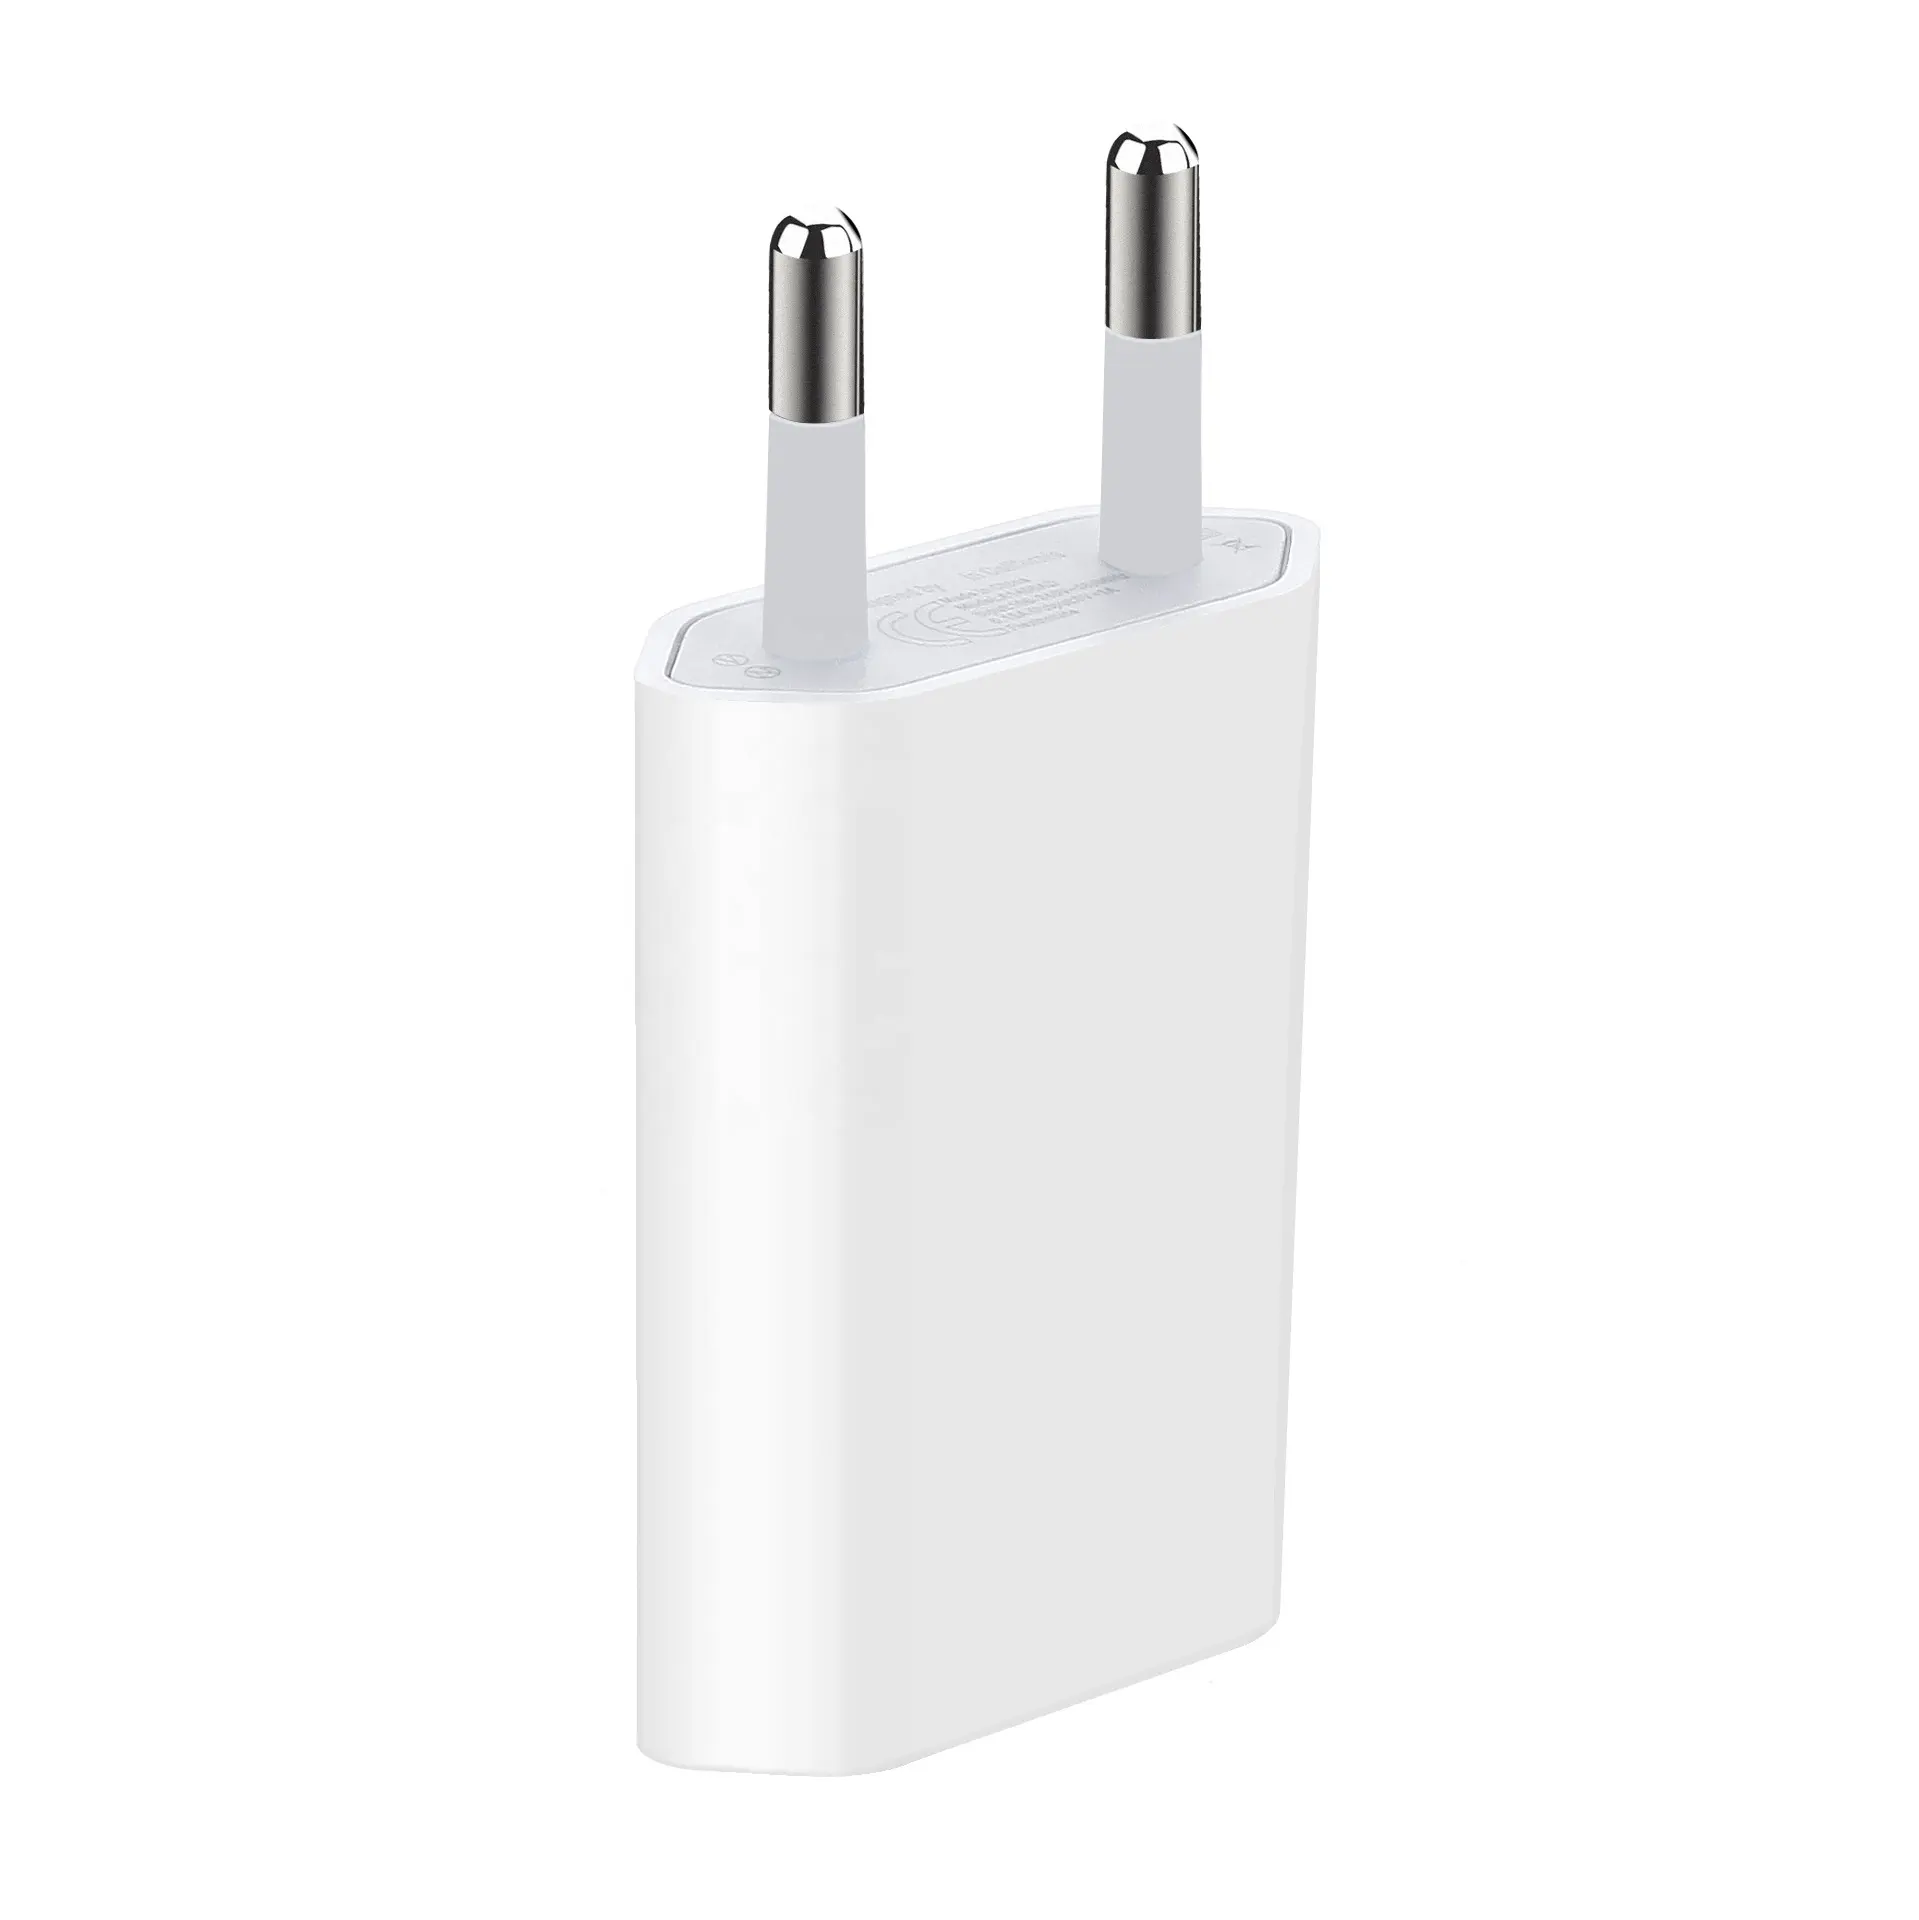 5V 1A AC adaptörü güç soket telefon seyahat şarj ab tak USB duvar şarj samsung için iphone apple